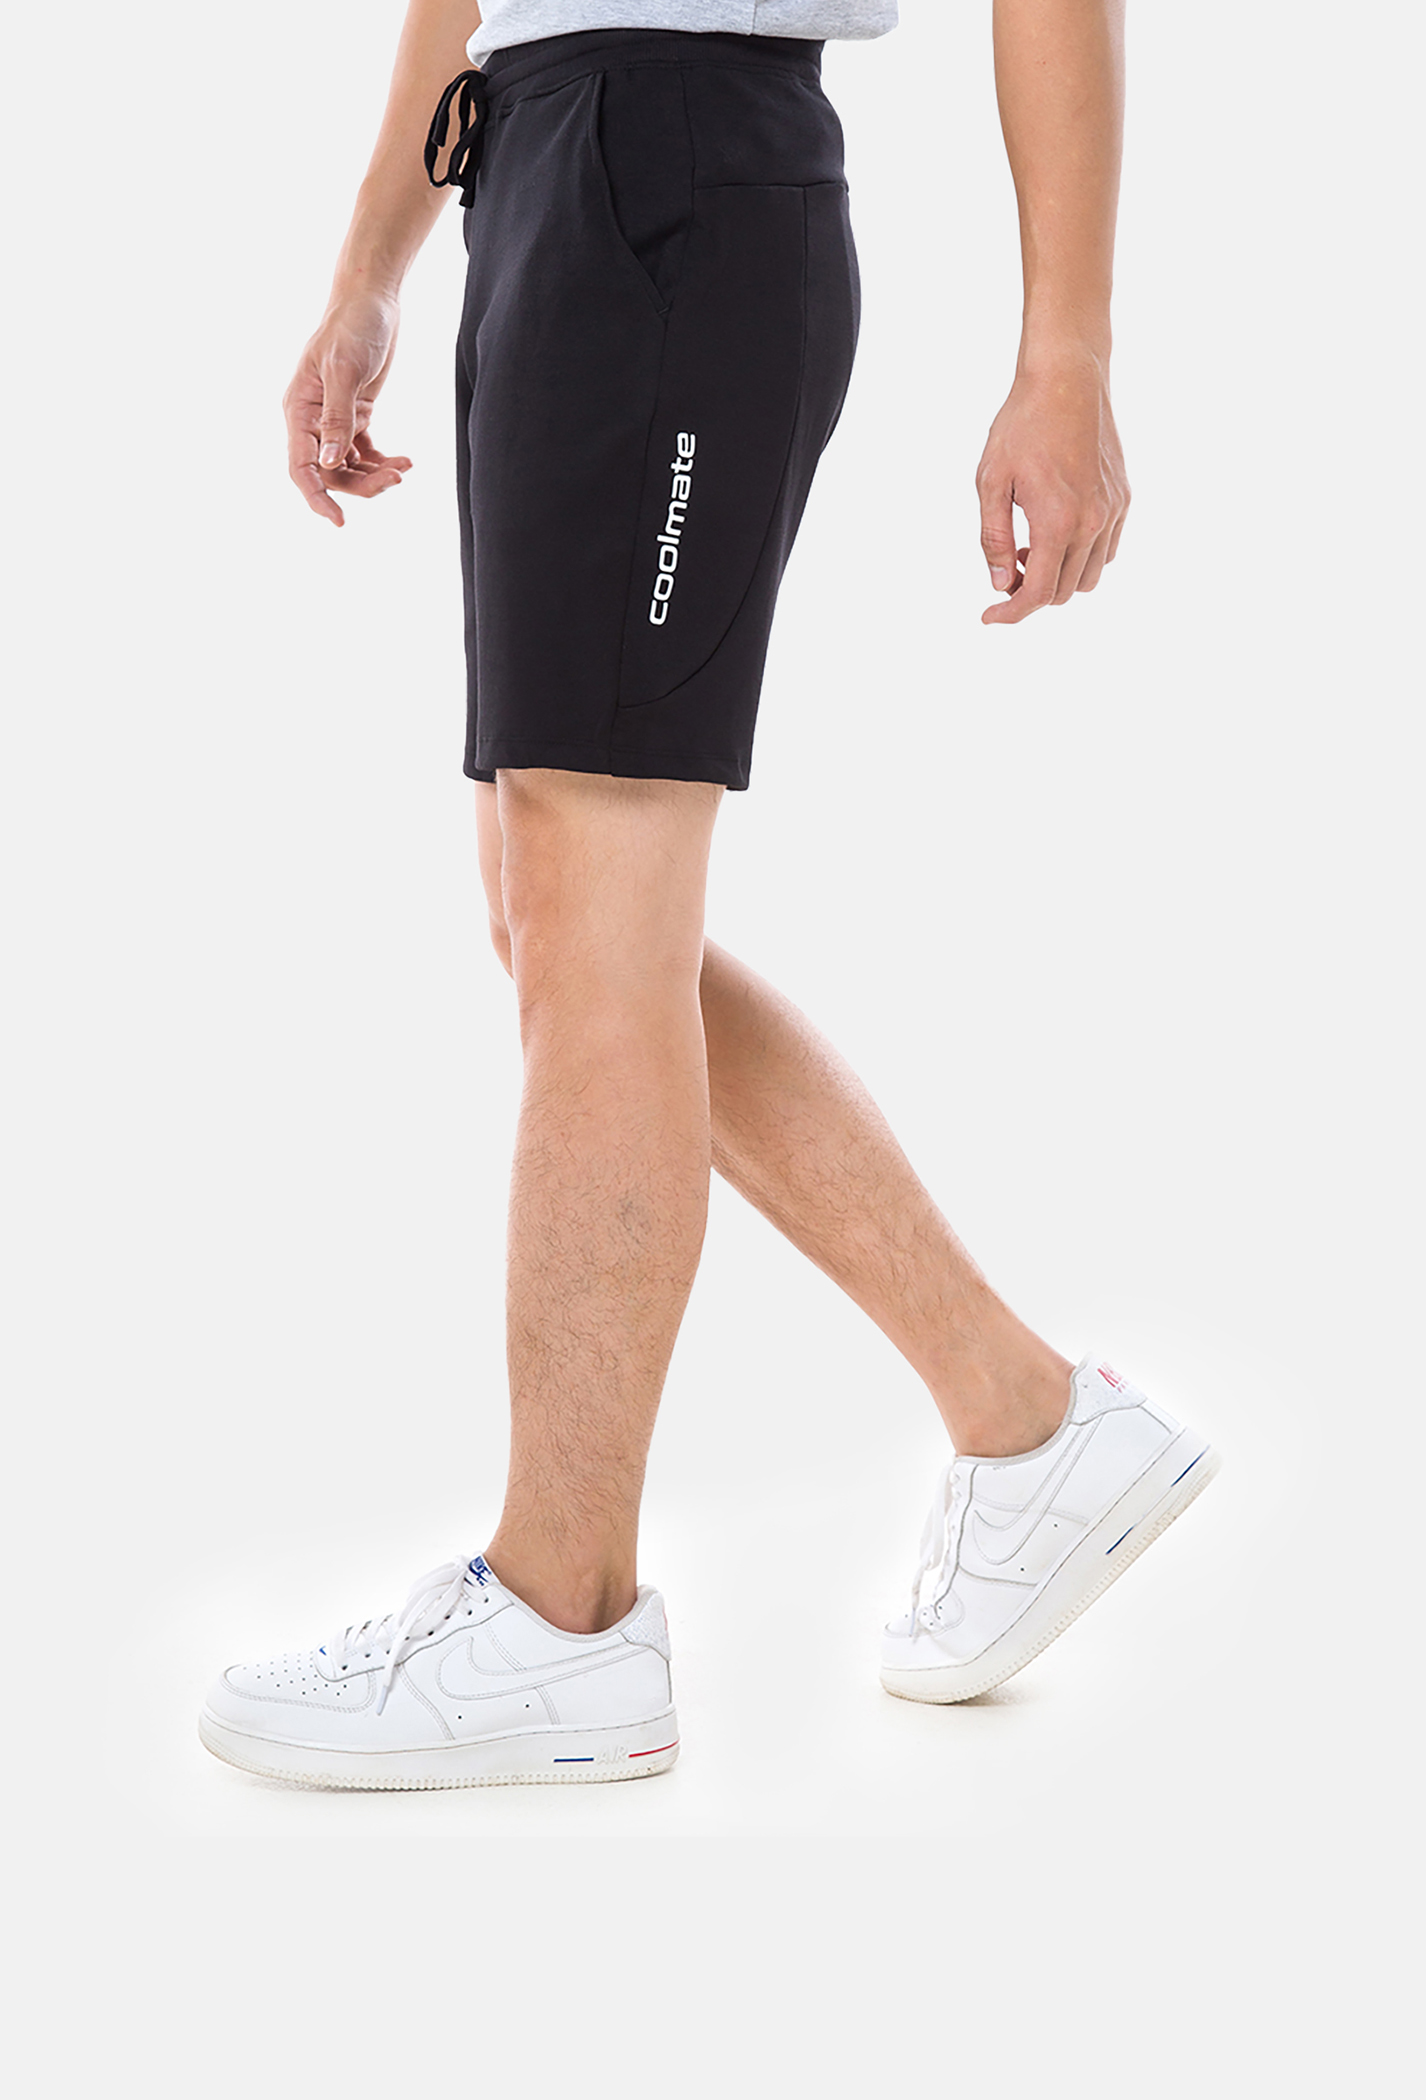 SĂN DEAL - Quần Shorts nam Easy Active màu đen (Form nhỏ) Đen 1